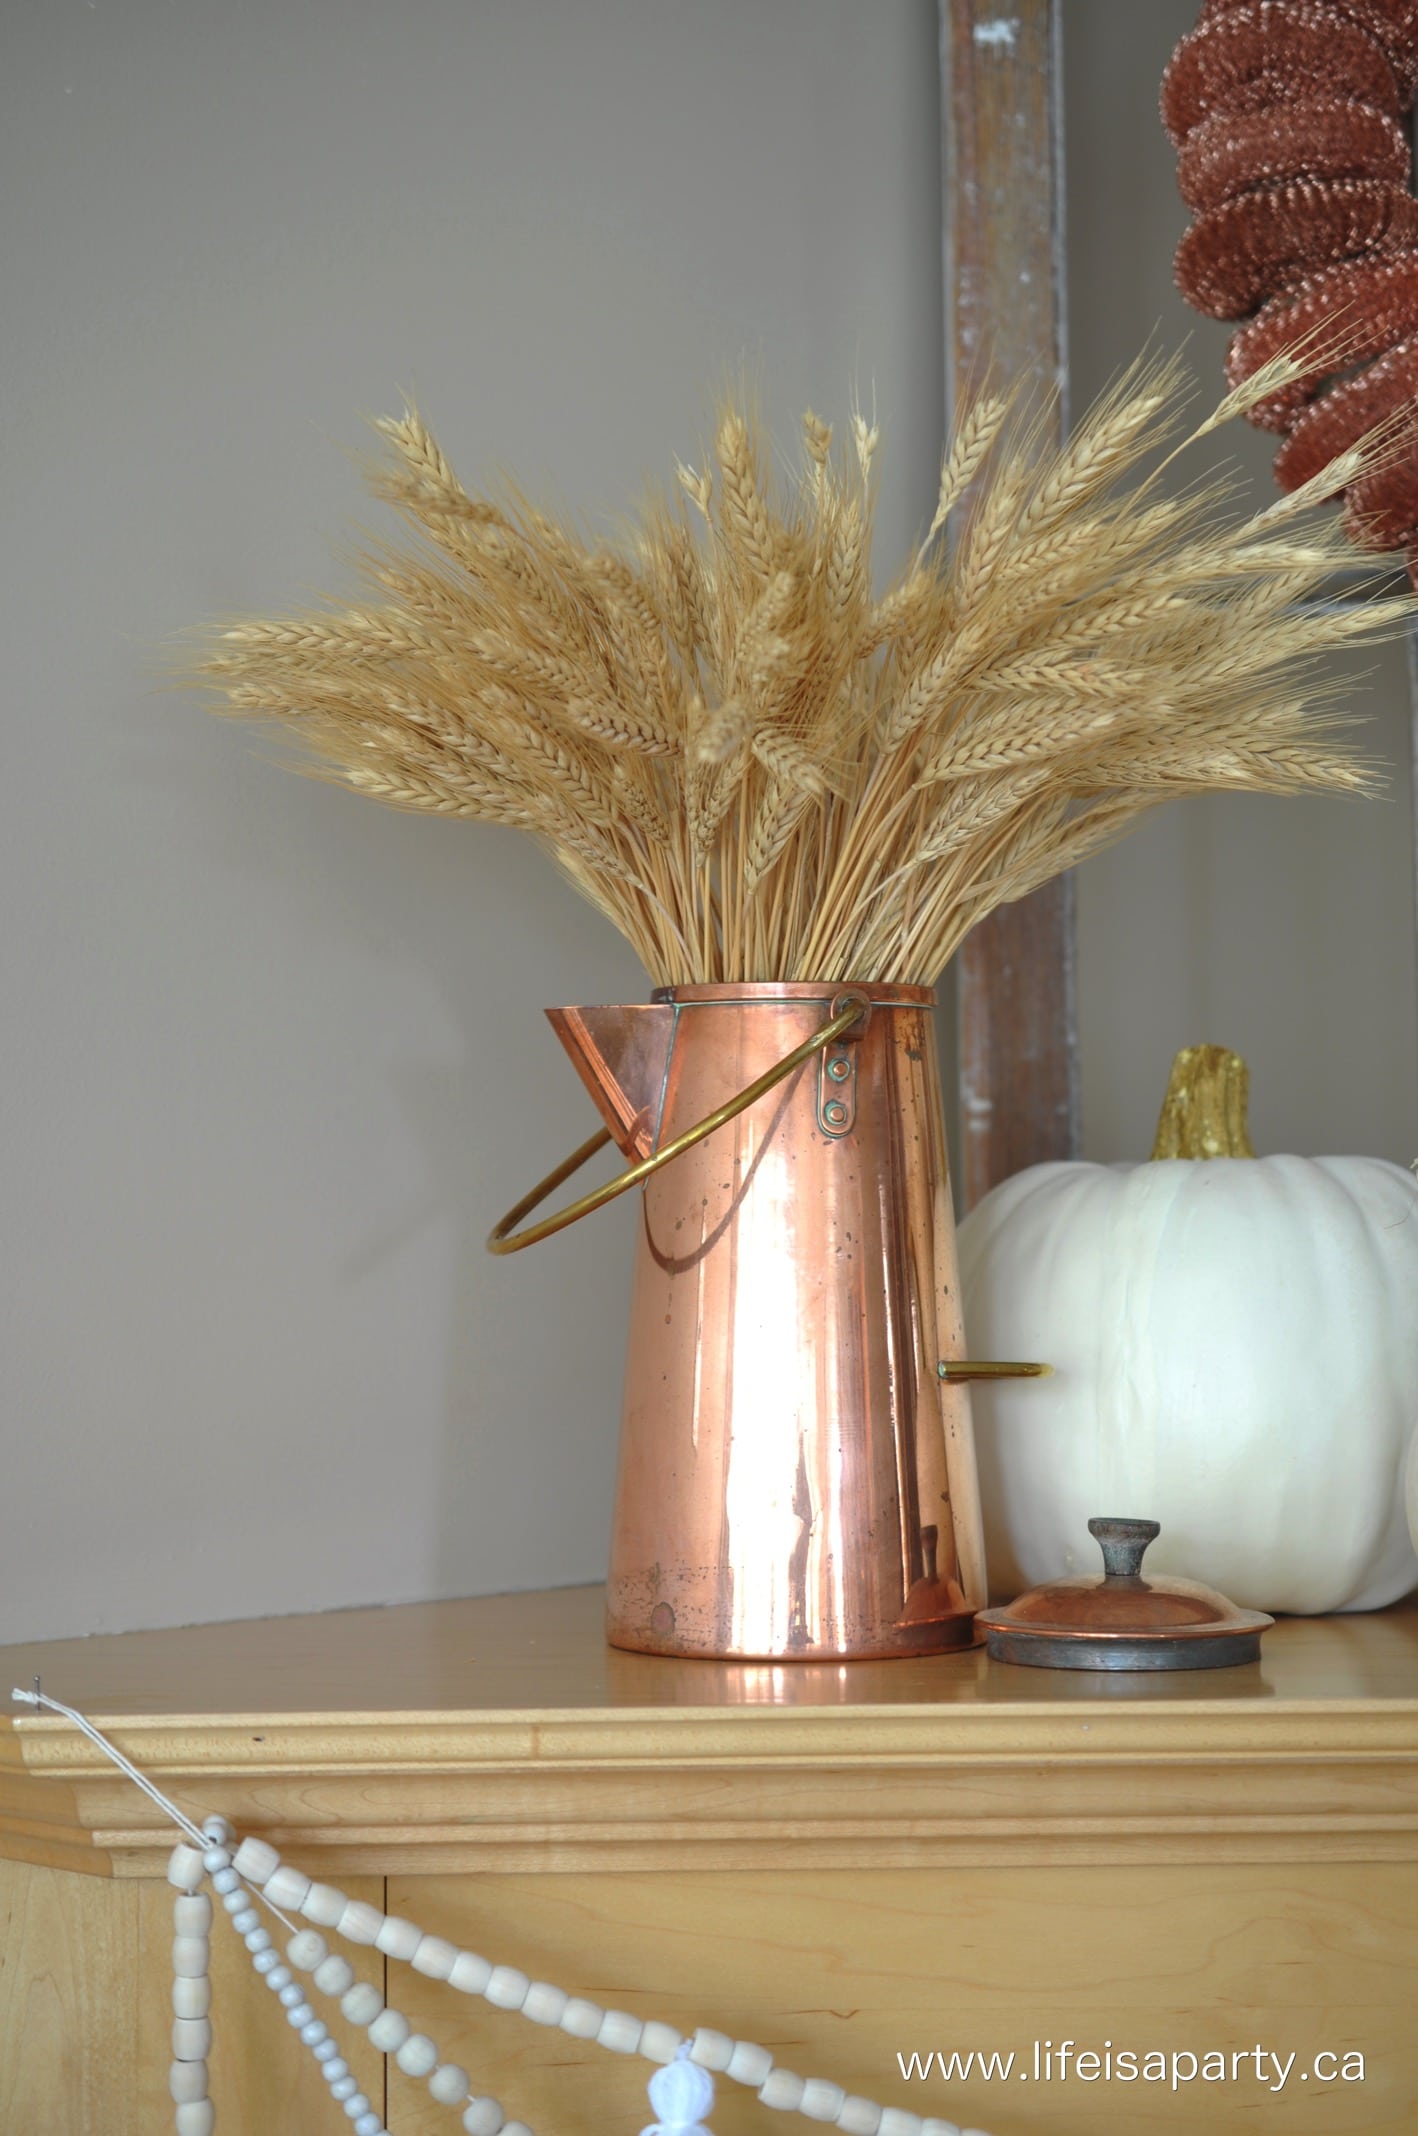 wheat in a copper kettle